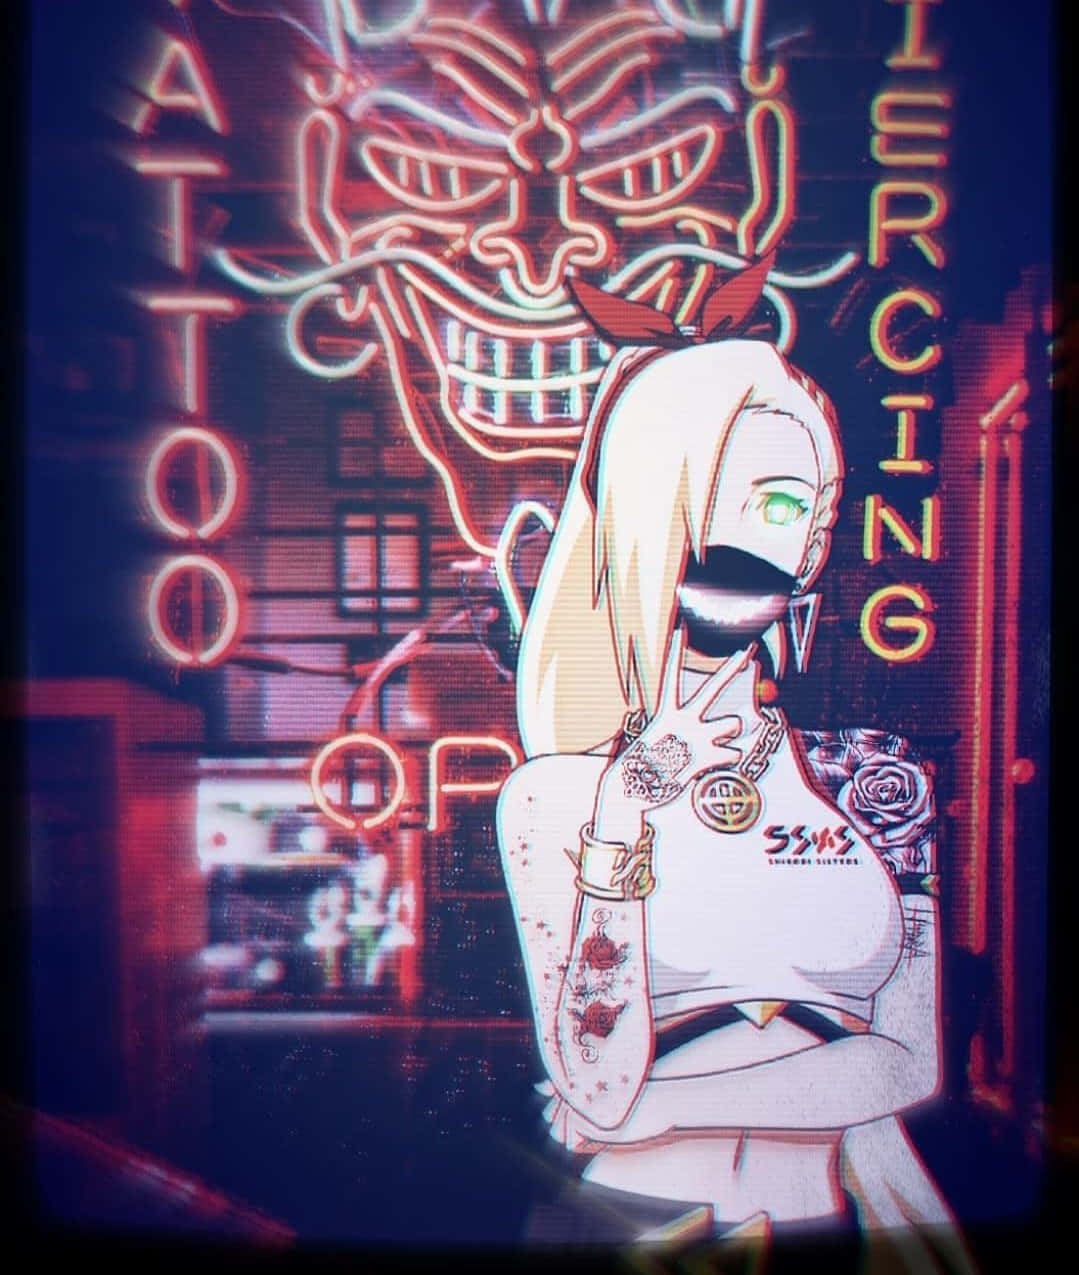 En pige med tatoveringer og et neon skilt. Wallpaper